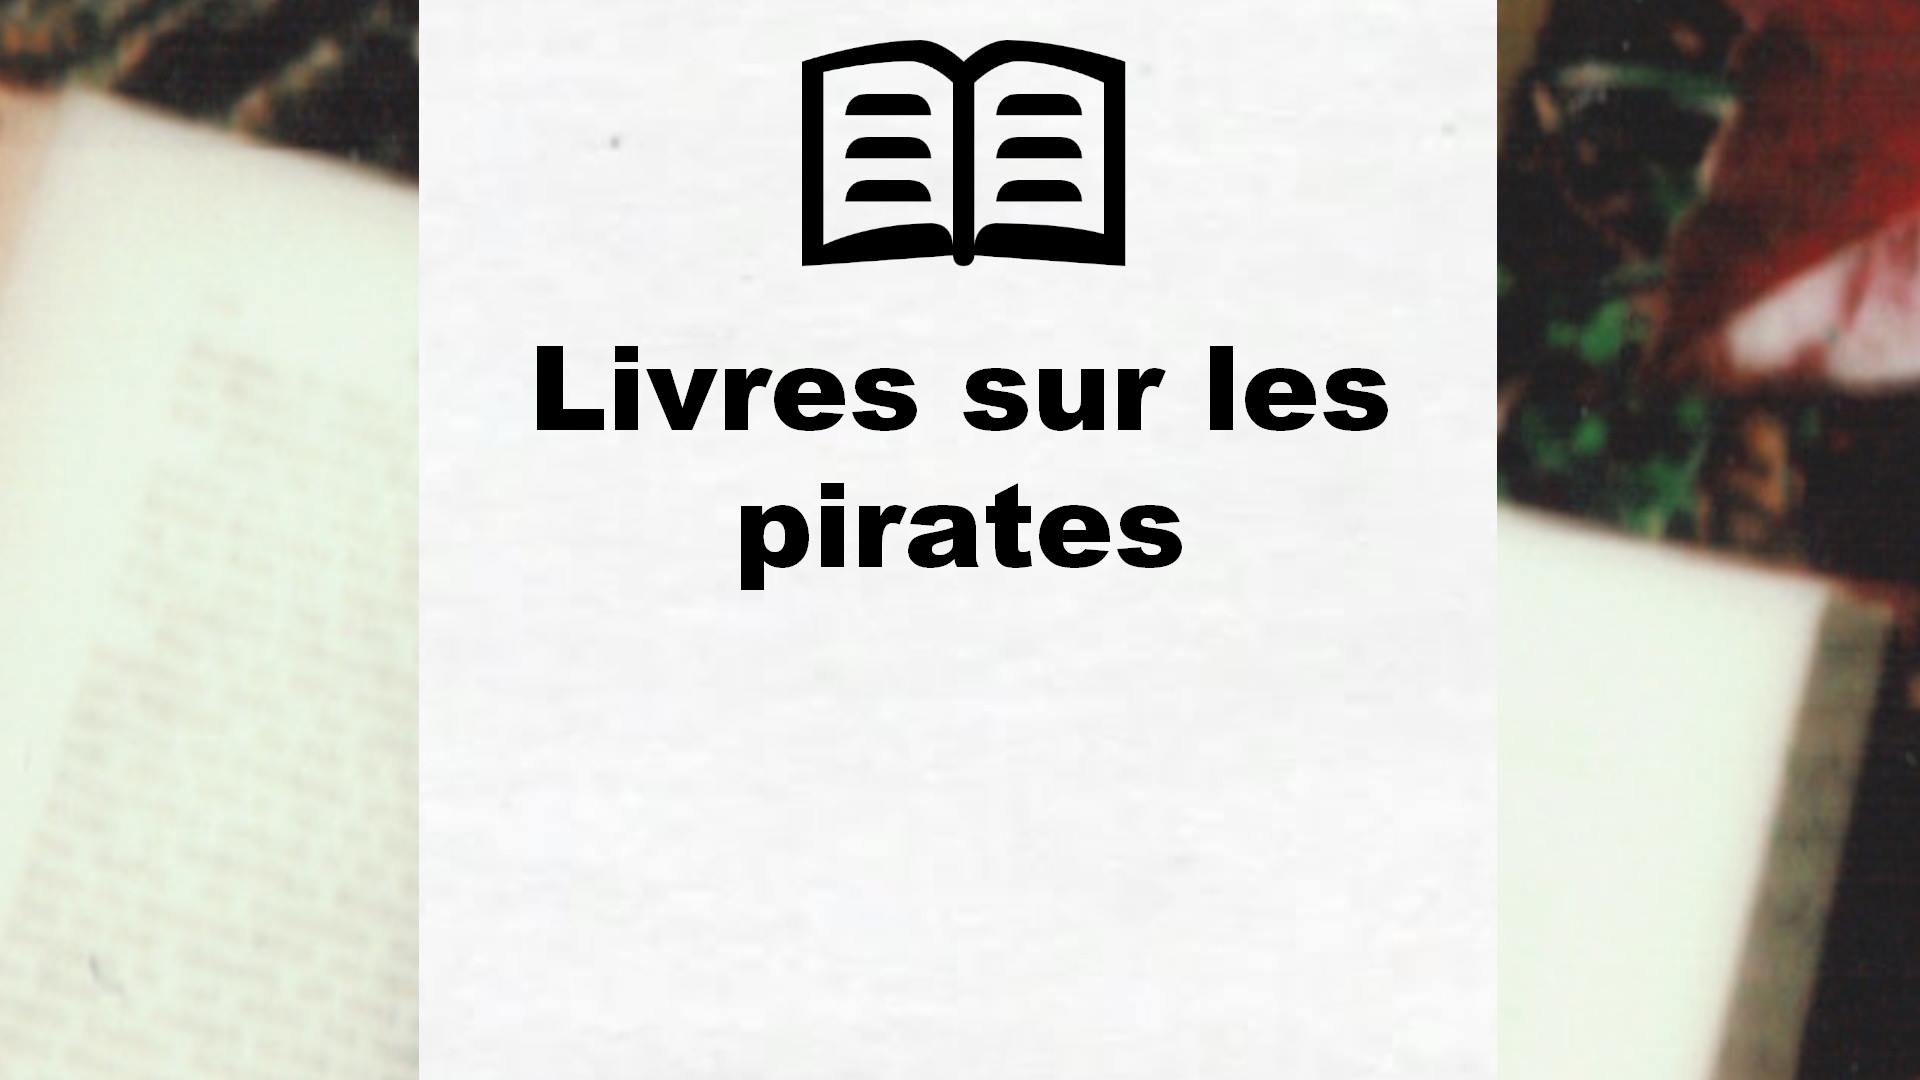 Livres sur les pirates